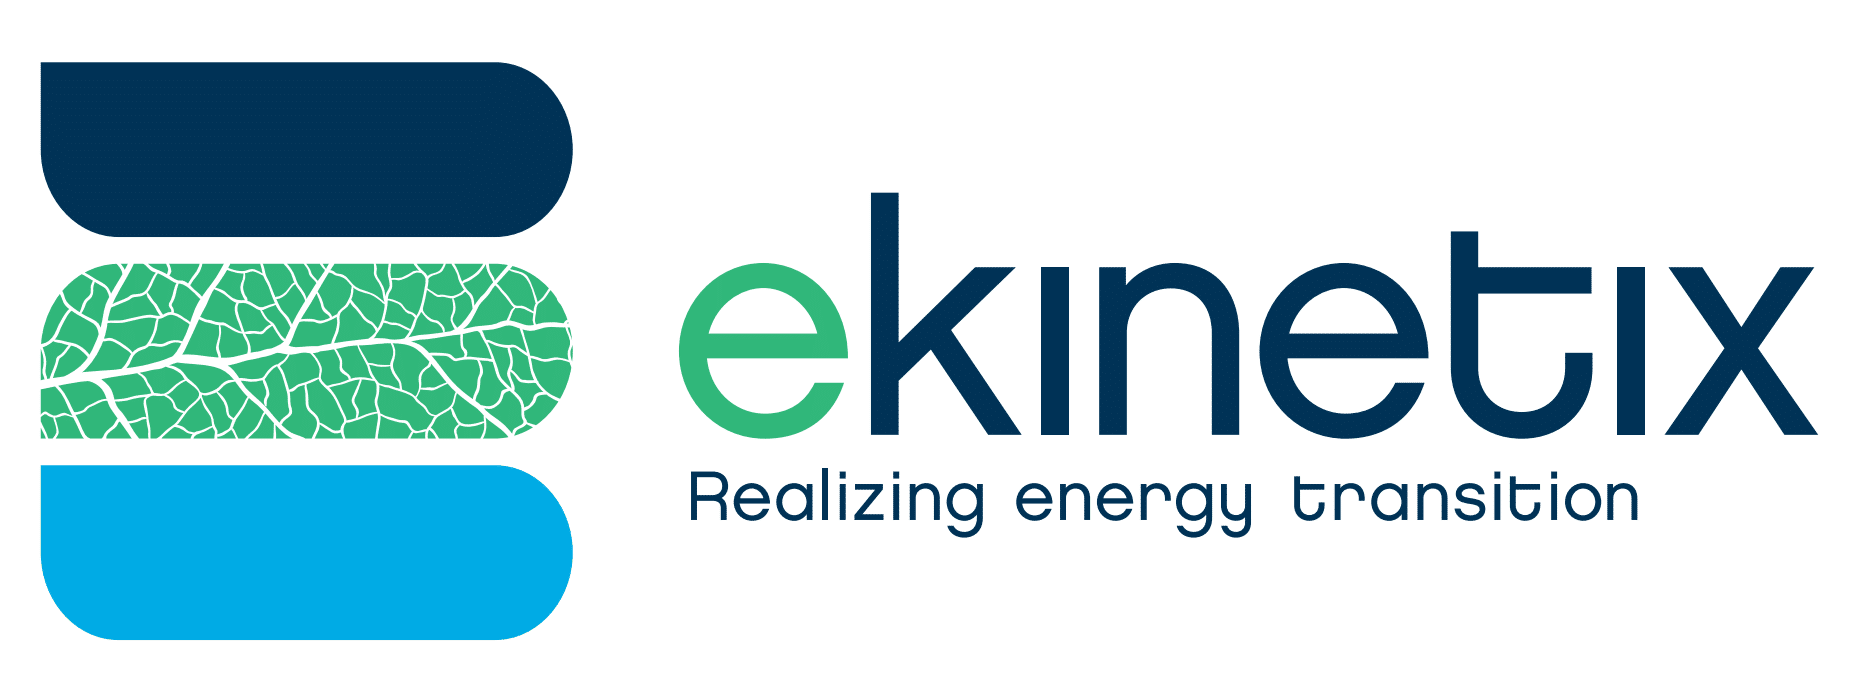 Logo Ekinetix (Realizing energy transition)